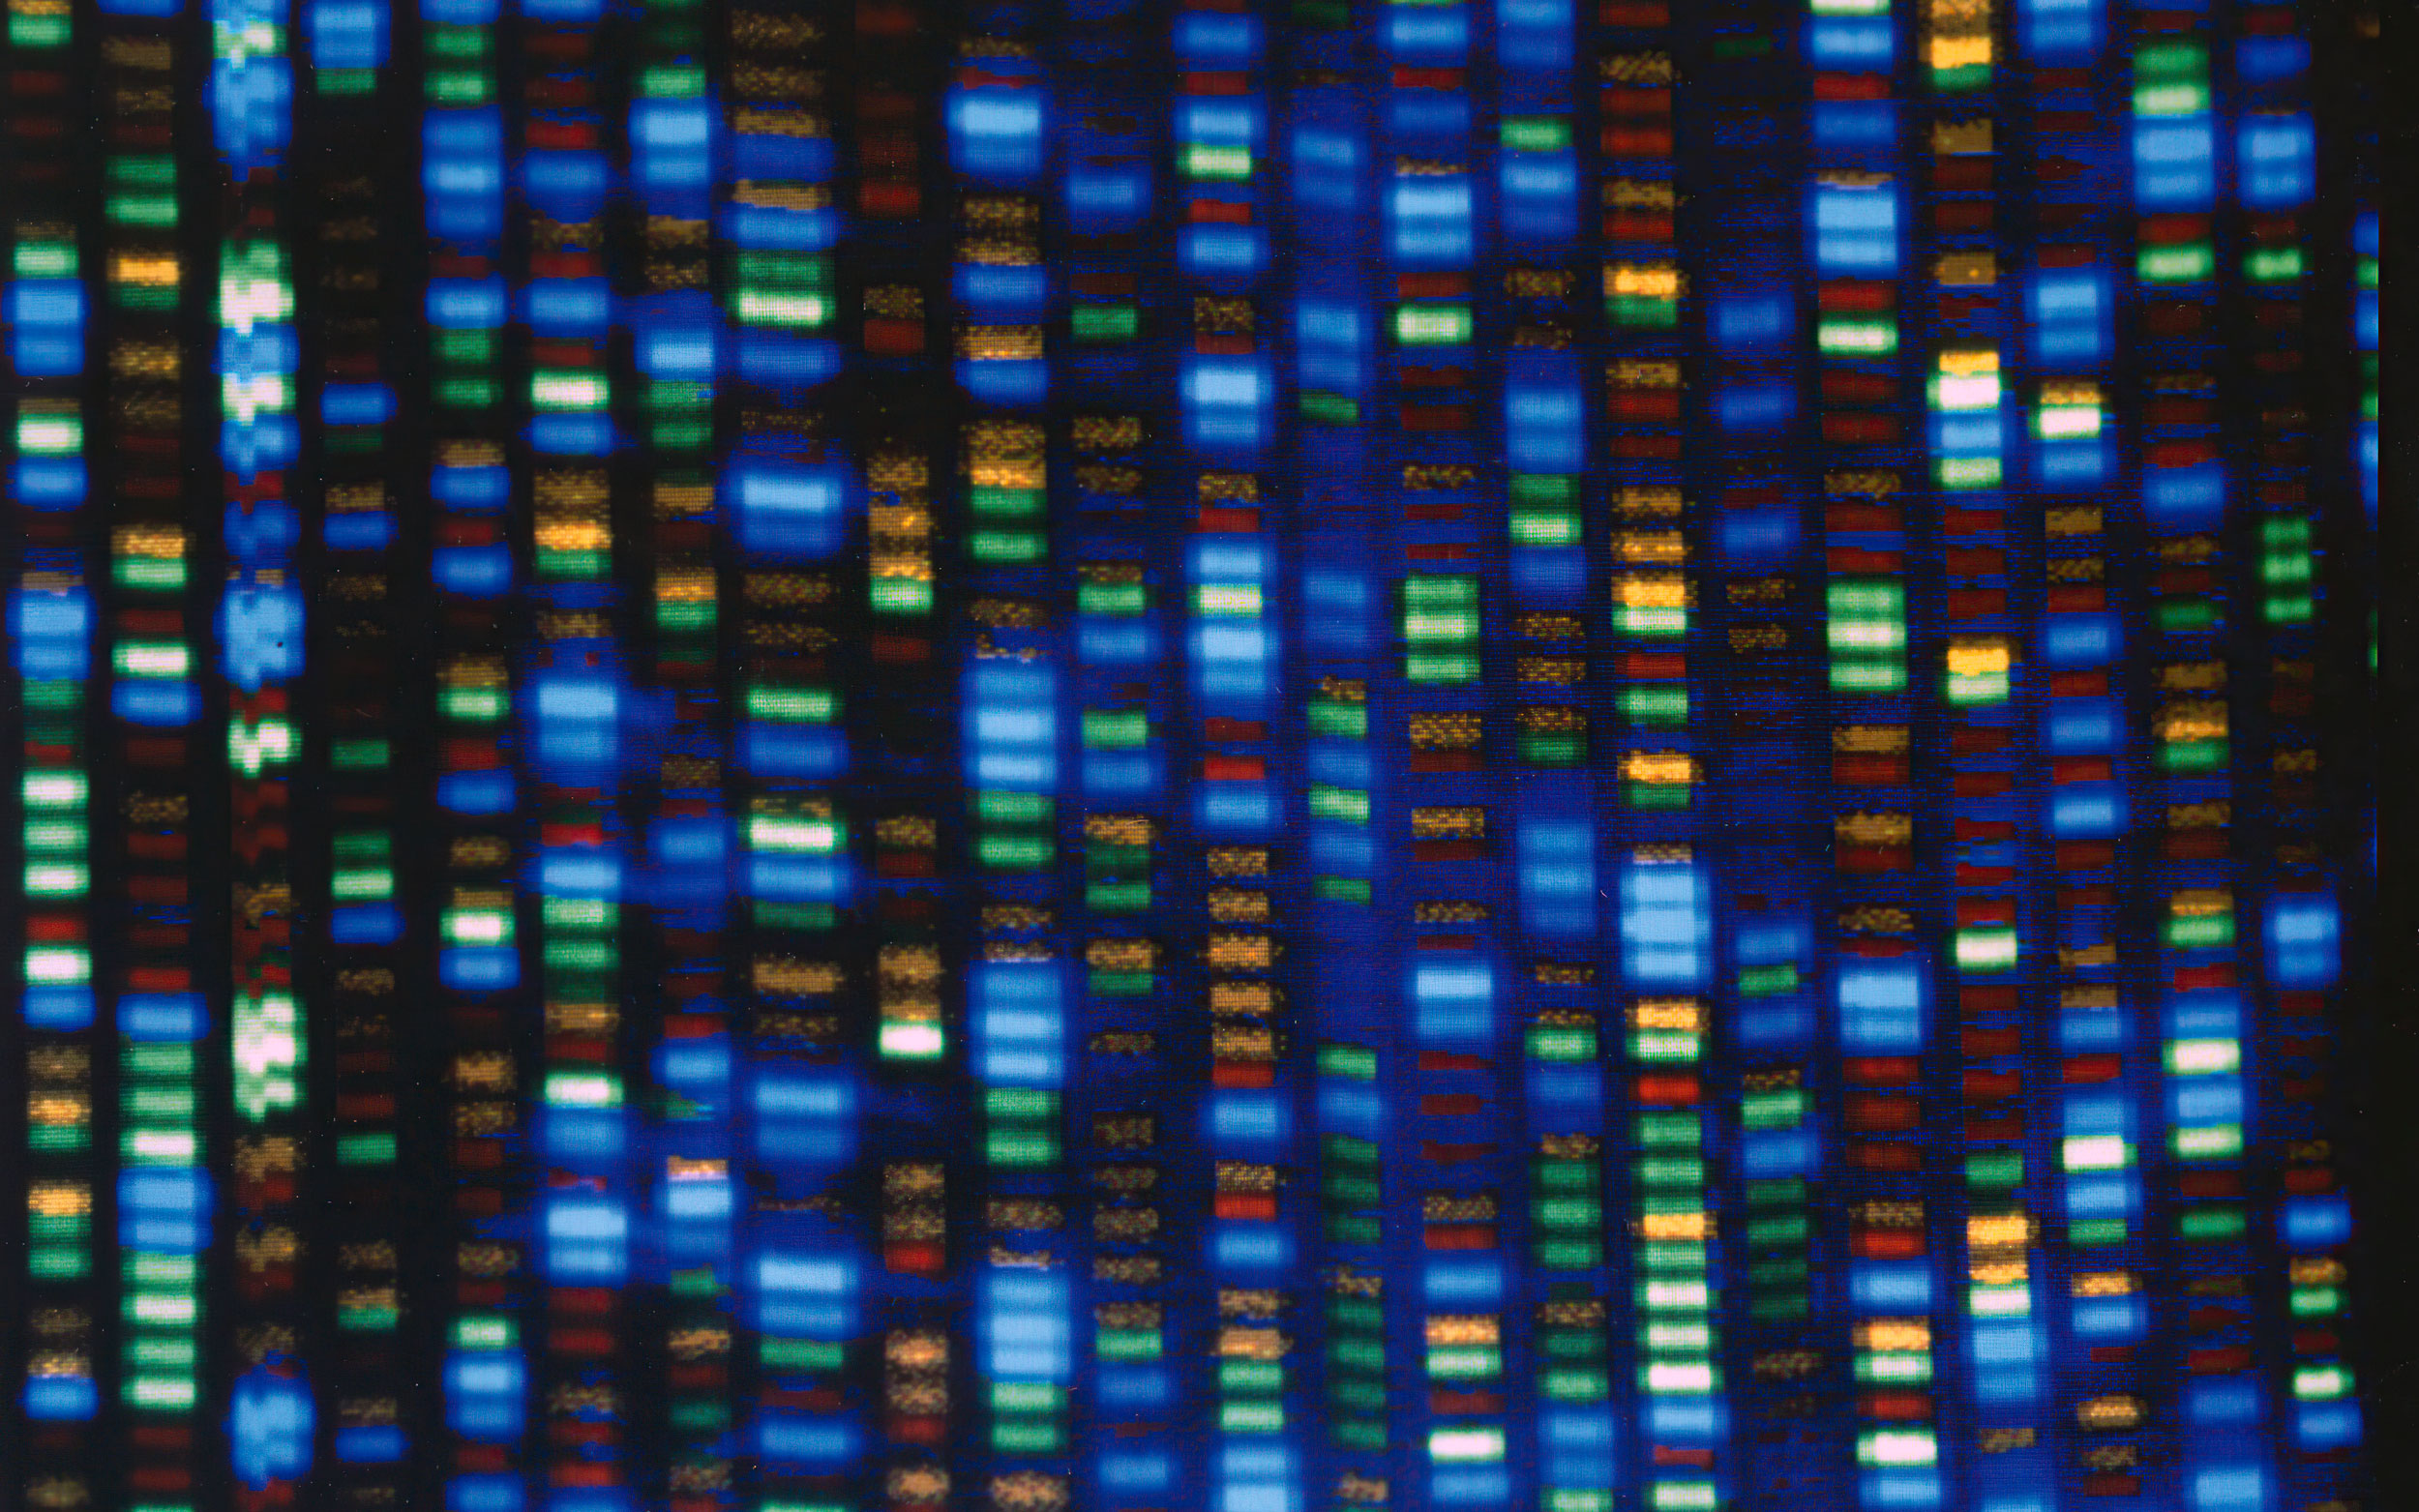 Científicos terminan de descifrar todo el genoma humano